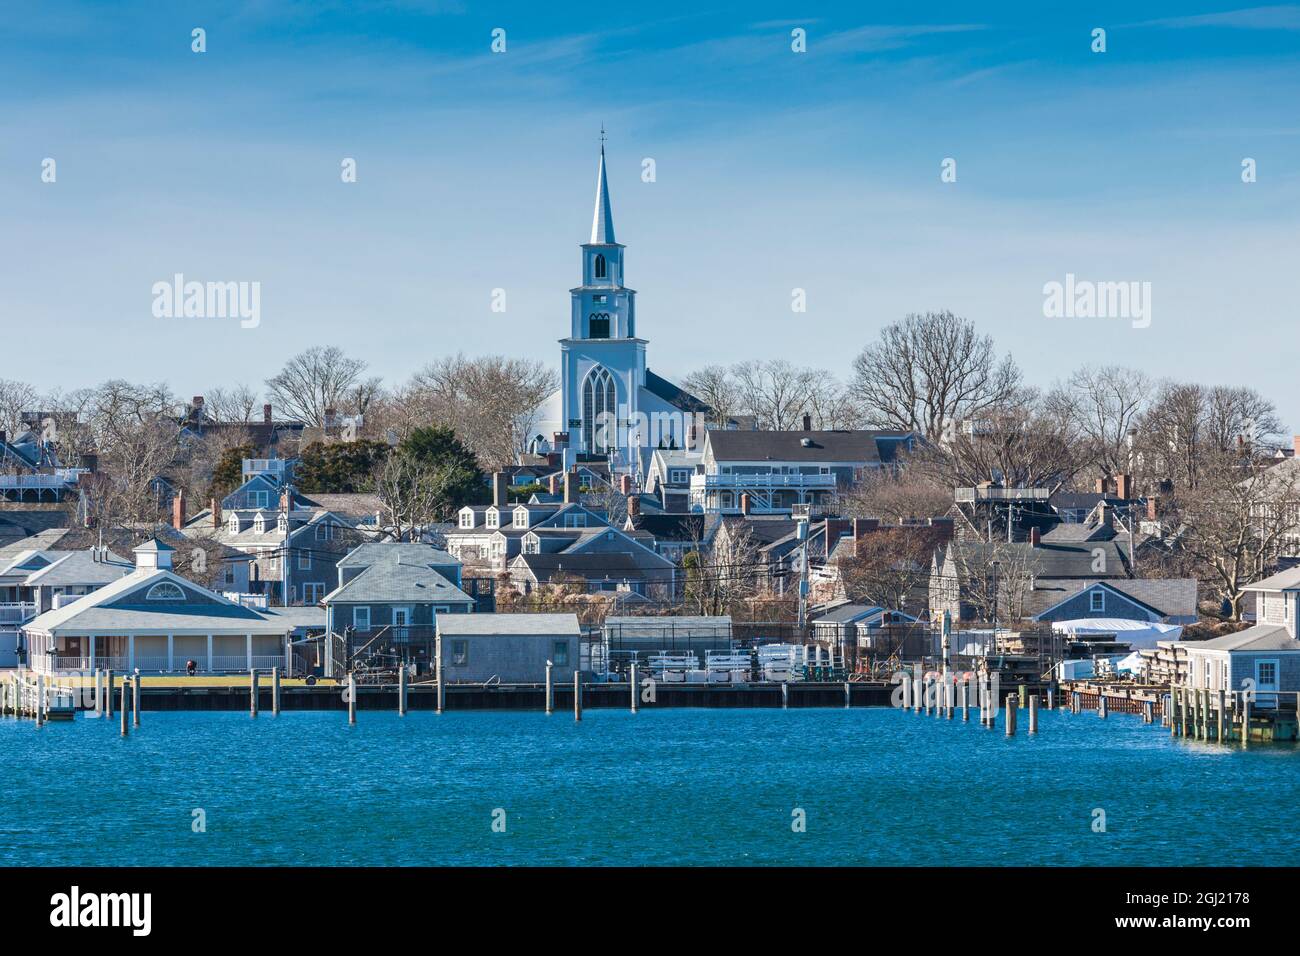 USA, Massachusetts, Nantucket Island. Nantucket Town, First Congregational Church exterior. Stock Photo